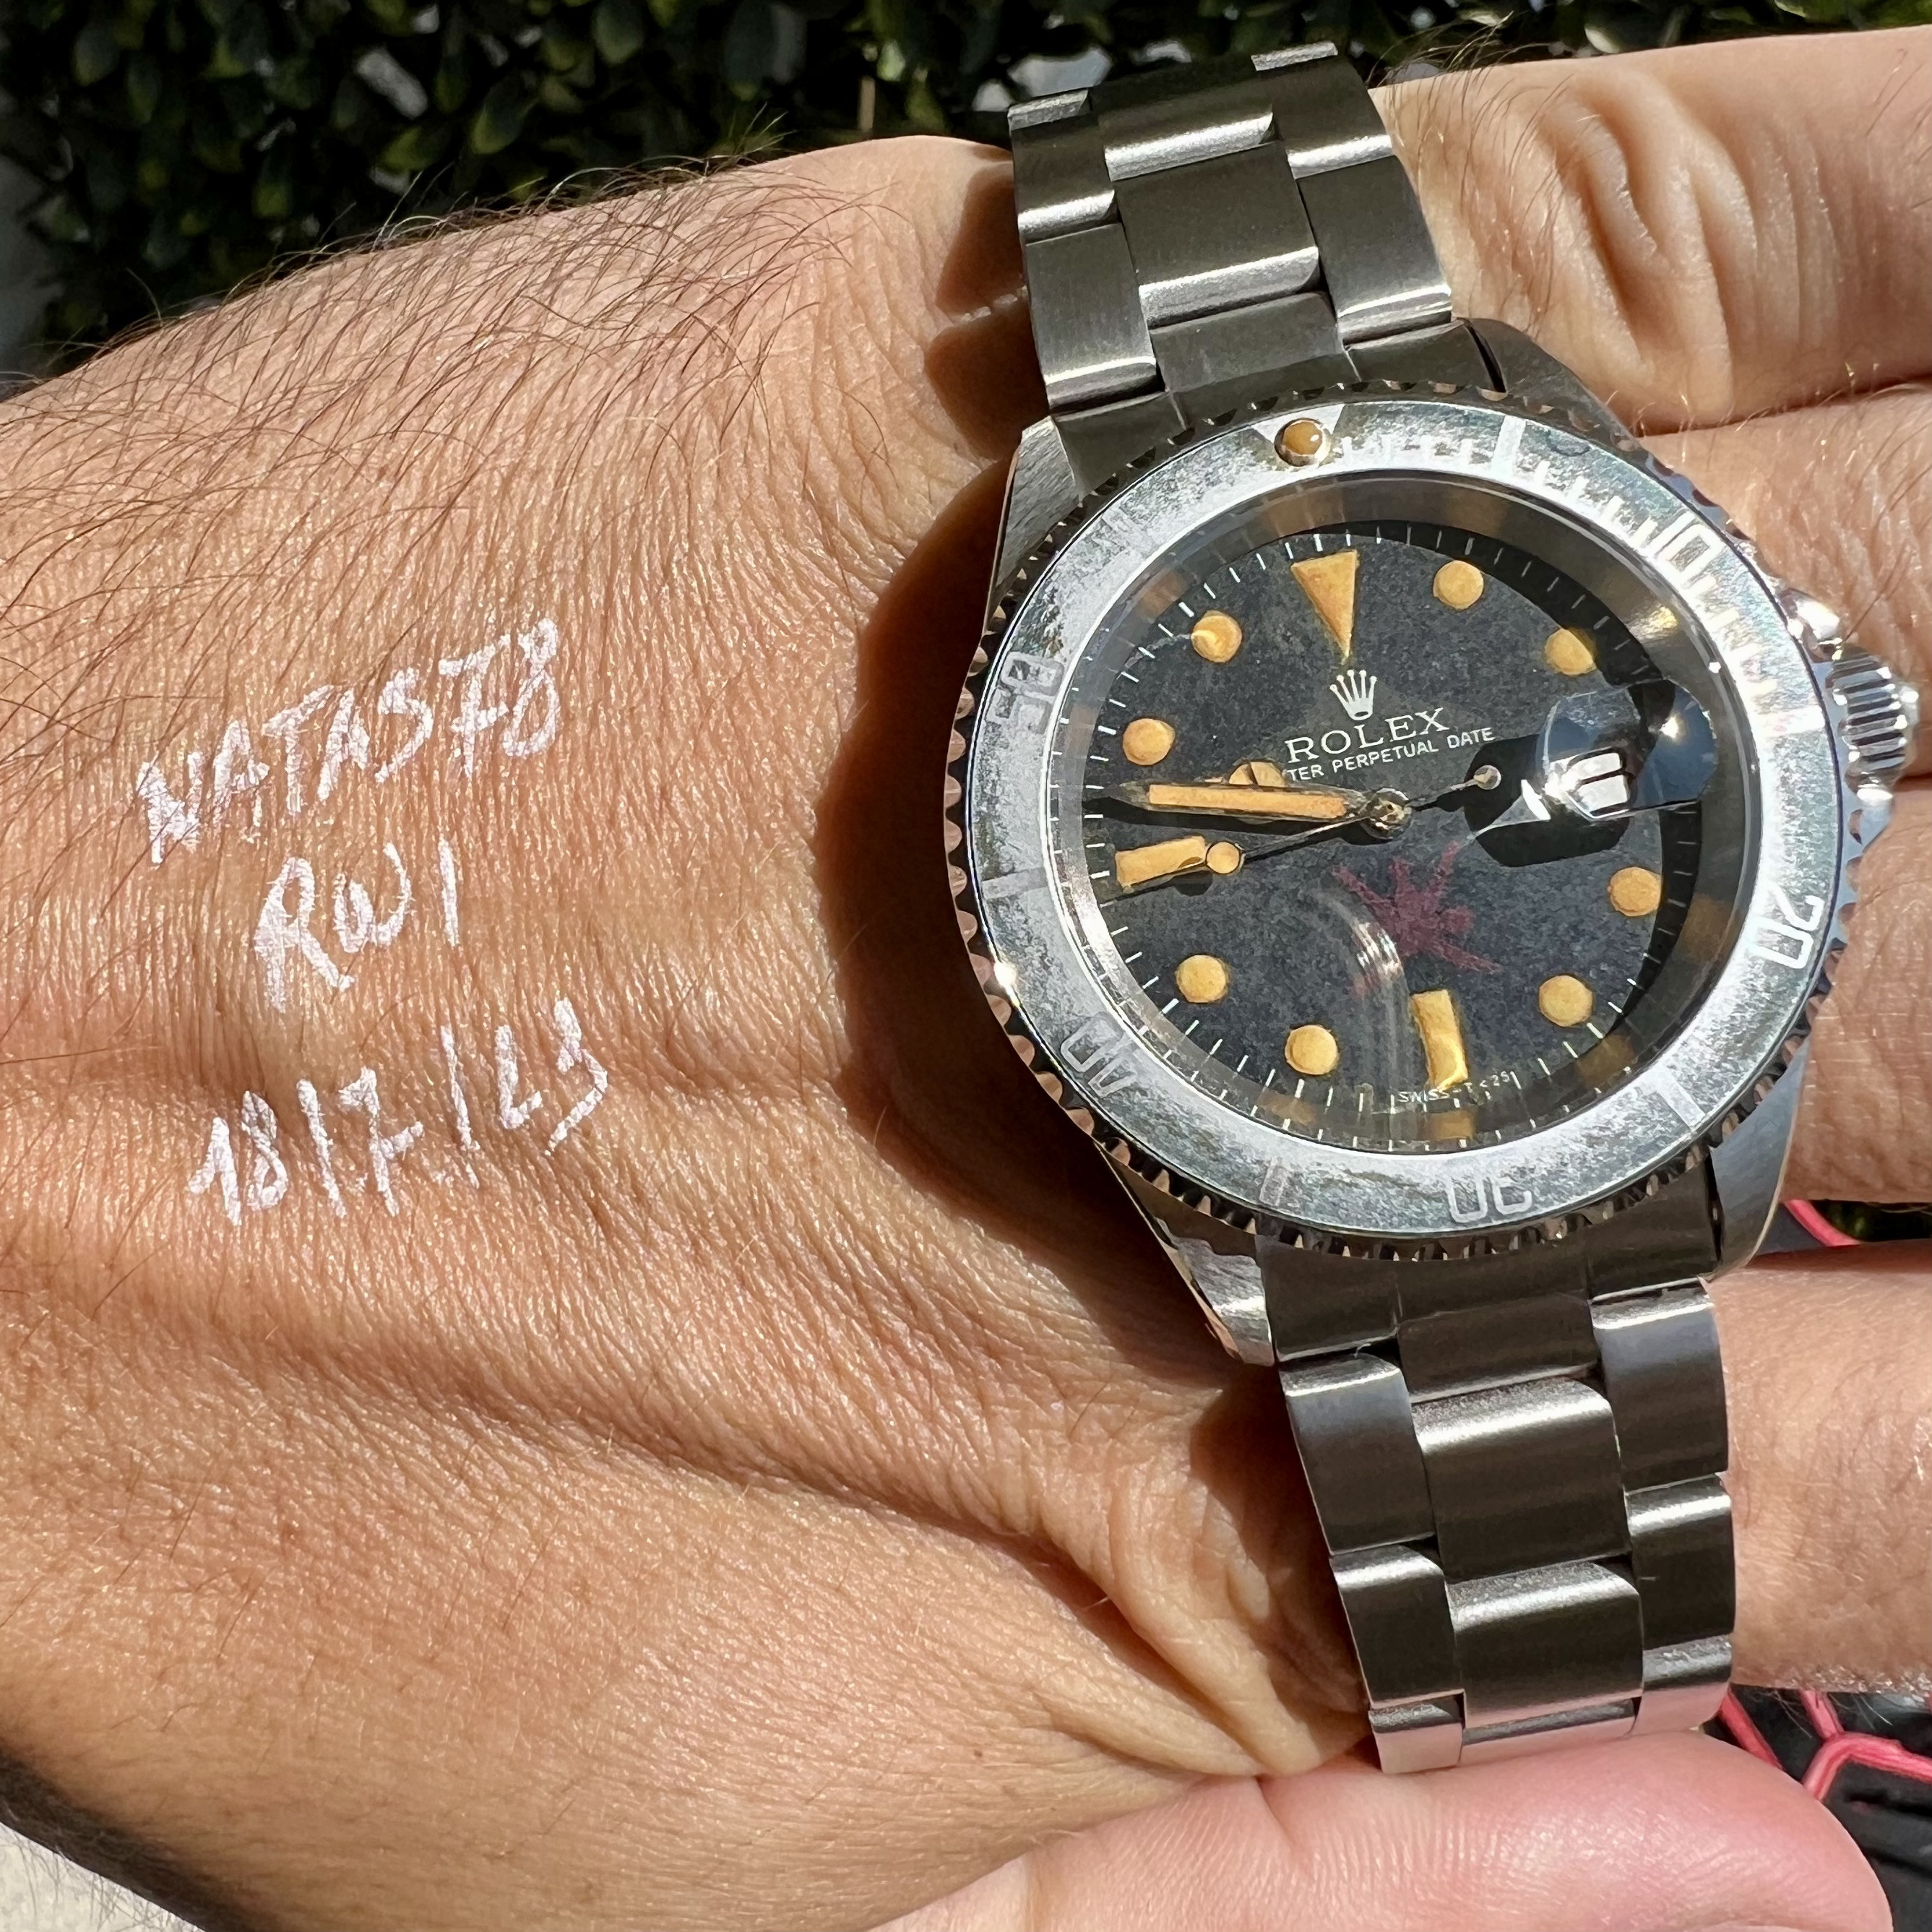 Rolex Submariner Date Khanjar Watch